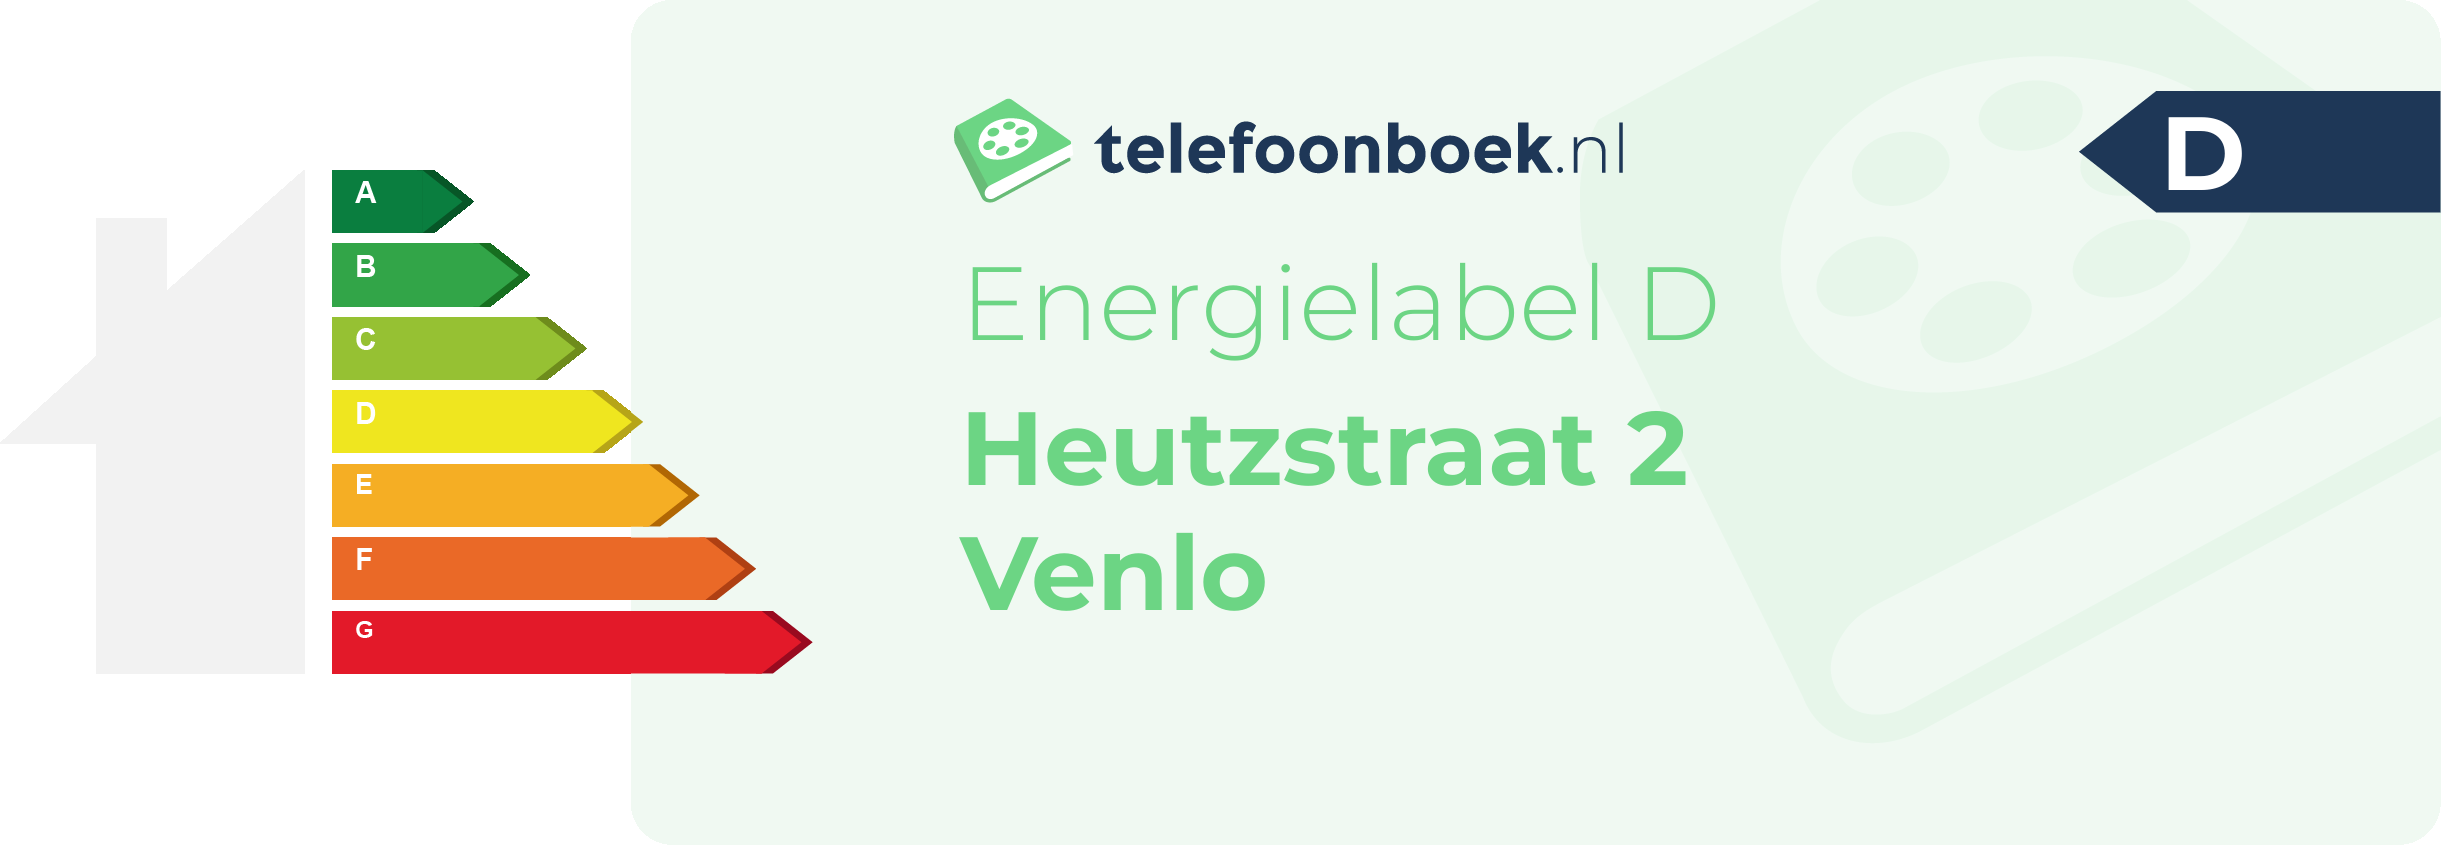 Energielabel Heutzstraat 2 Venlo